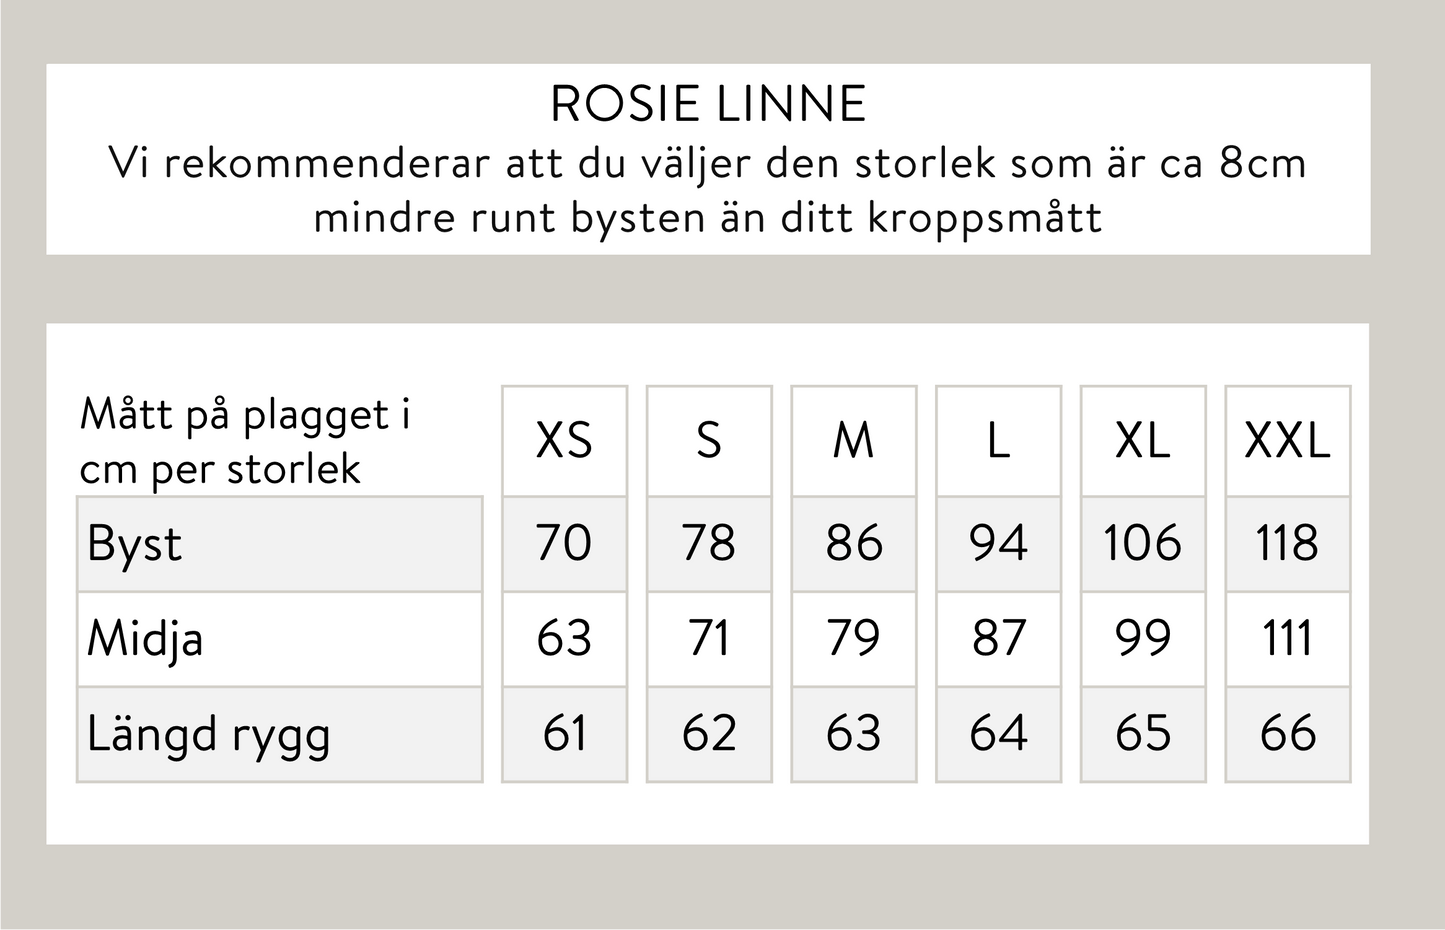 Rosie linne - Svart